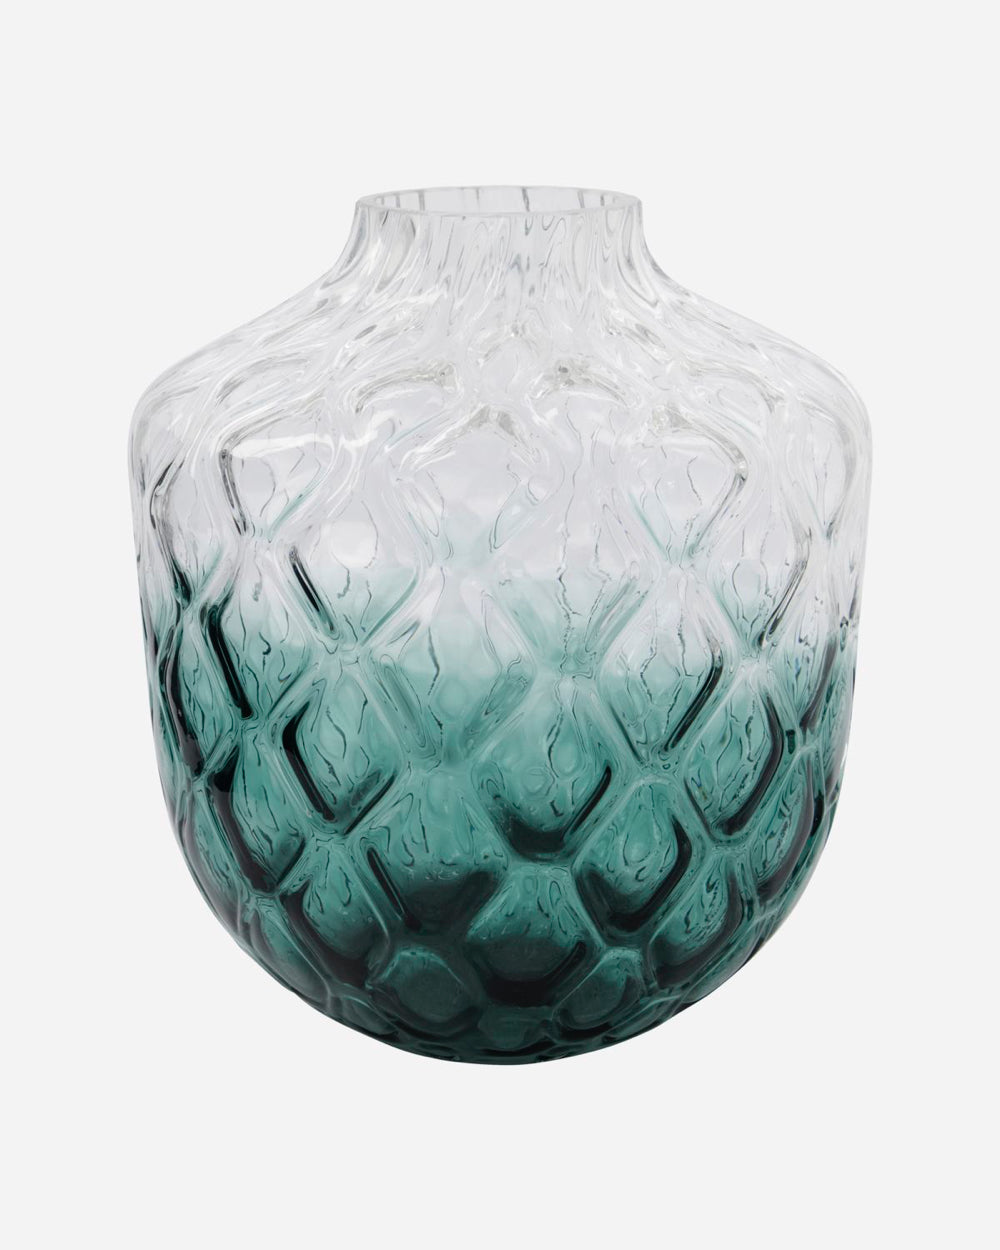 Load billede i Galleri Viewer, Vase med grøn natur farve
